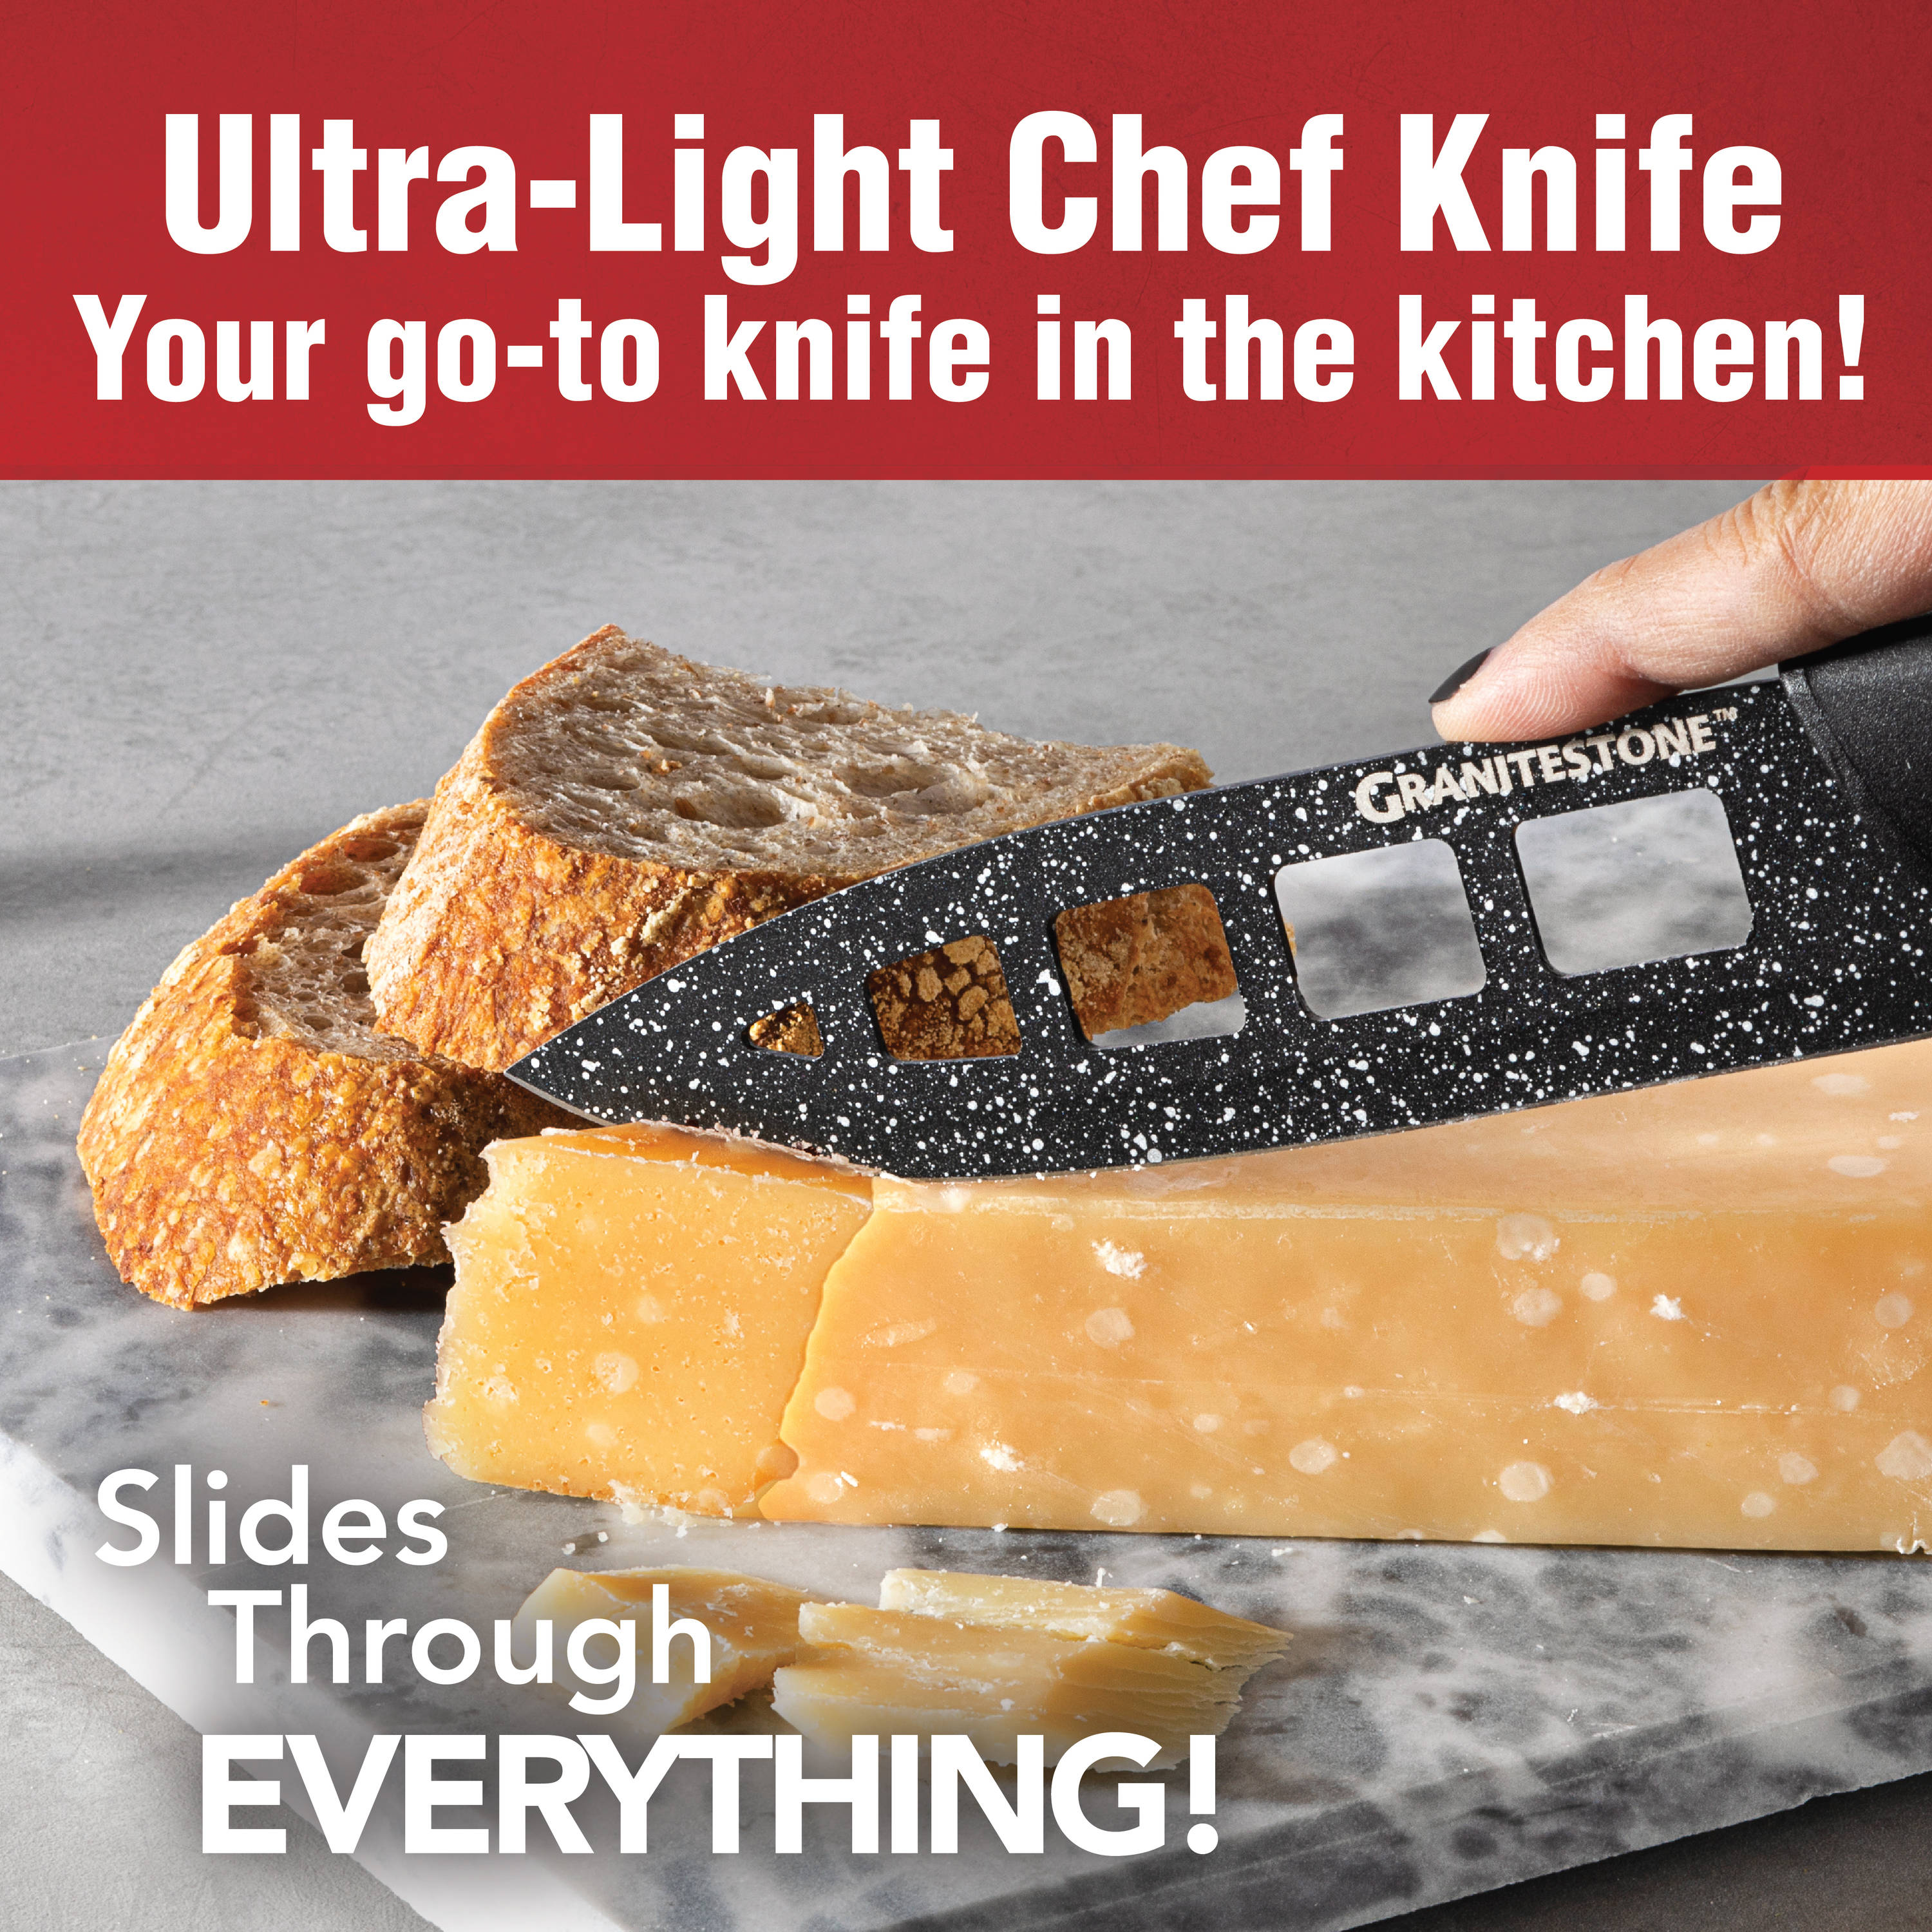 Nutriblade Knife Set Kitchen Nonstick Knives Set Dishwasher Safe New 4Pcs 